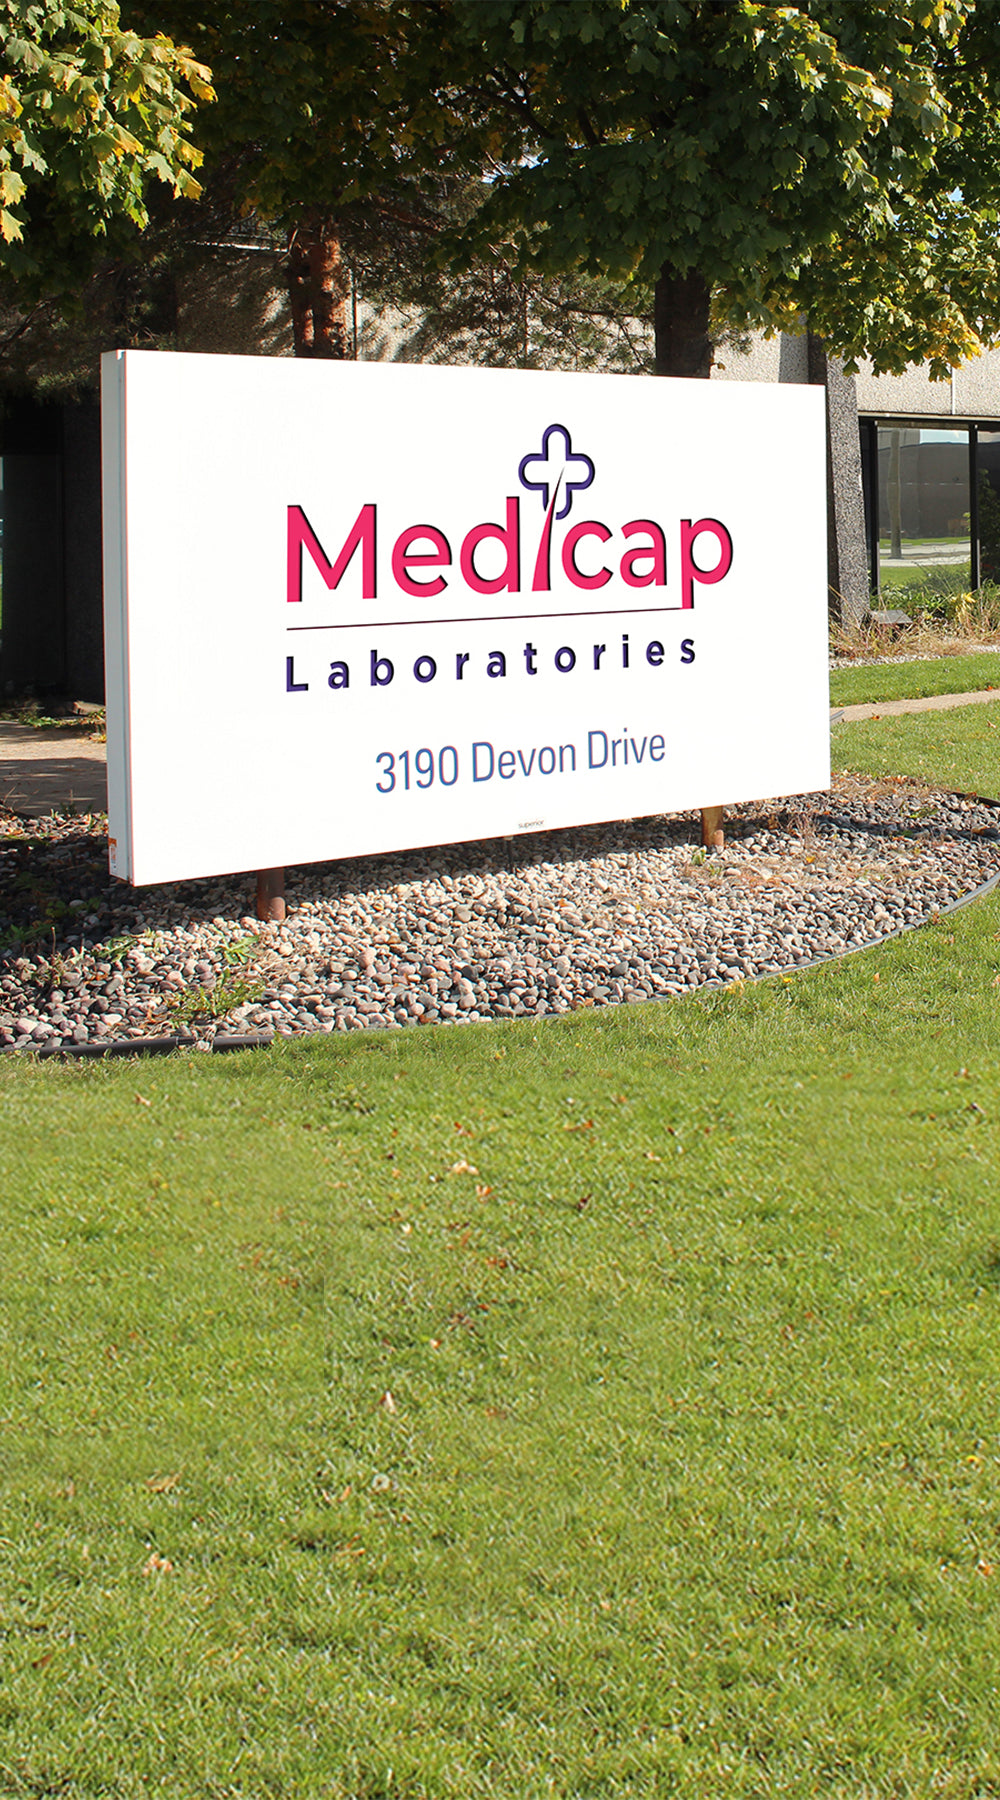 Medicap Laboratories manufacturing